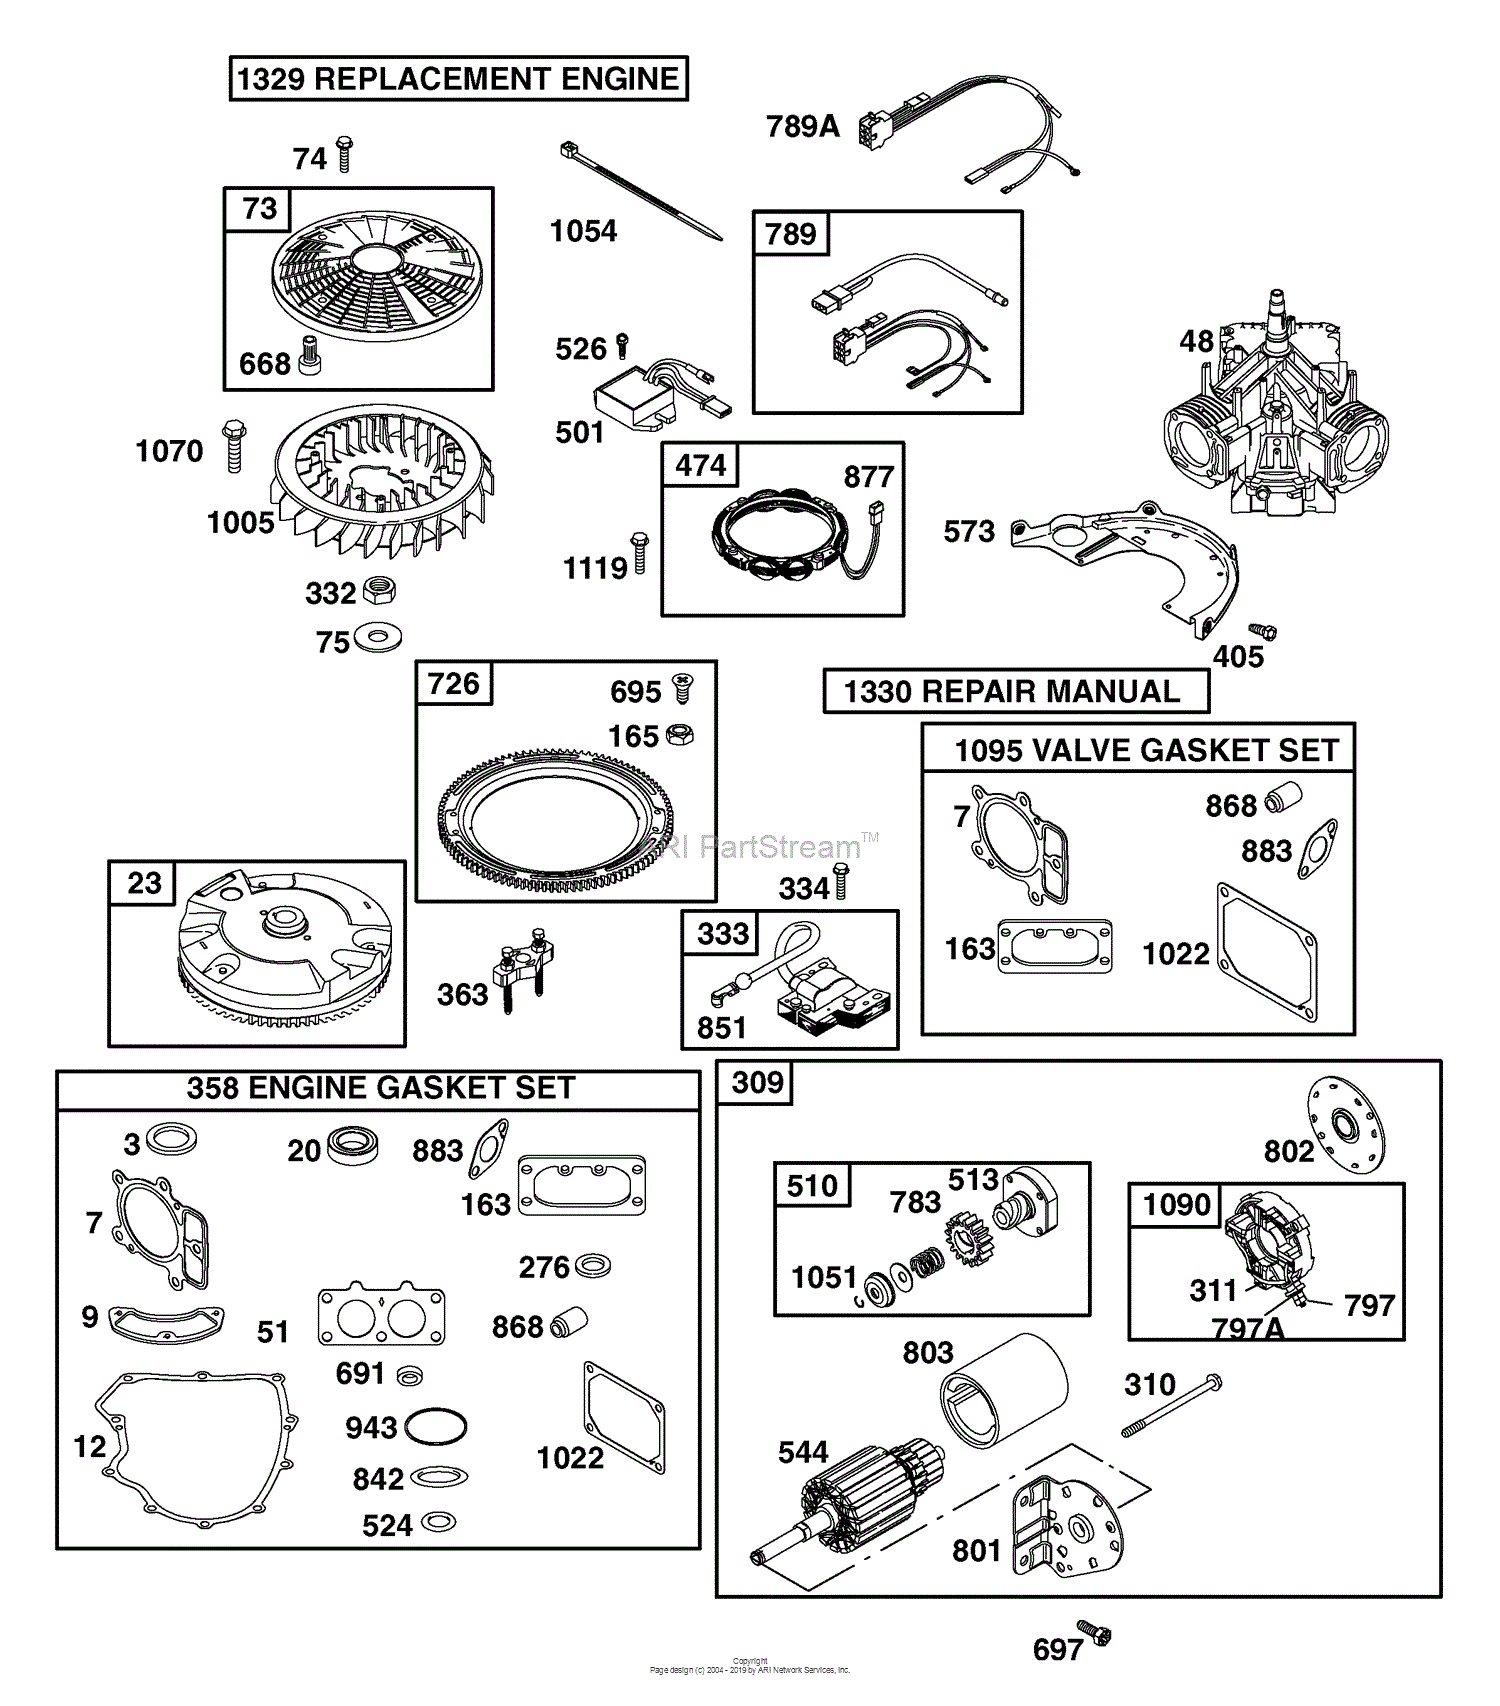 Husqvarna YTH 2454 T (917.279220) (2006-05) Parts Diagram ... craftsman lawn mower electrical schematics 